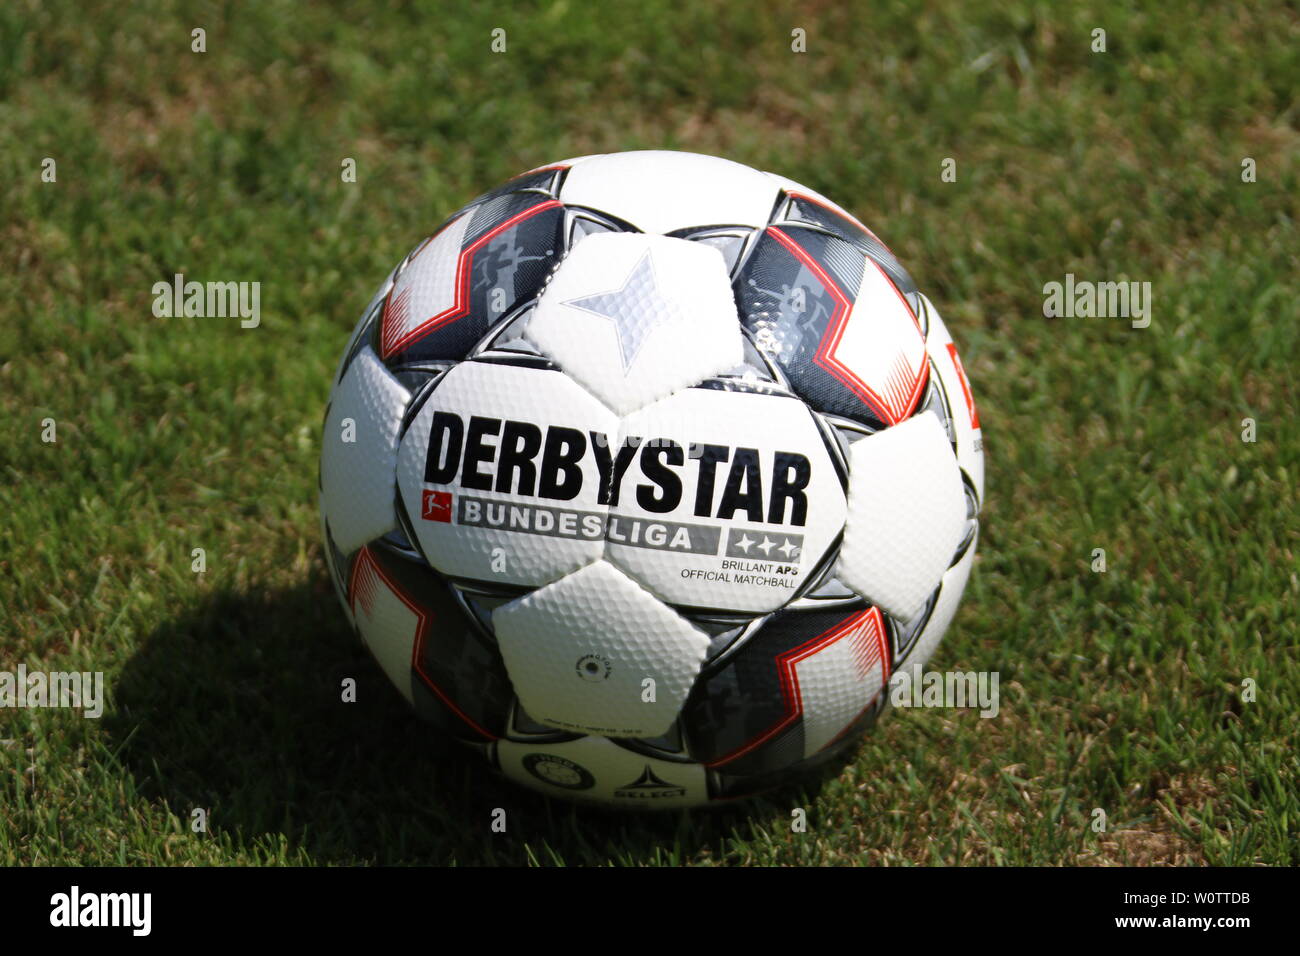 Derbystar - der neue Spielball der Fussball-Bundesliga in der Saison 2018/19  Stock Photo - Alamy